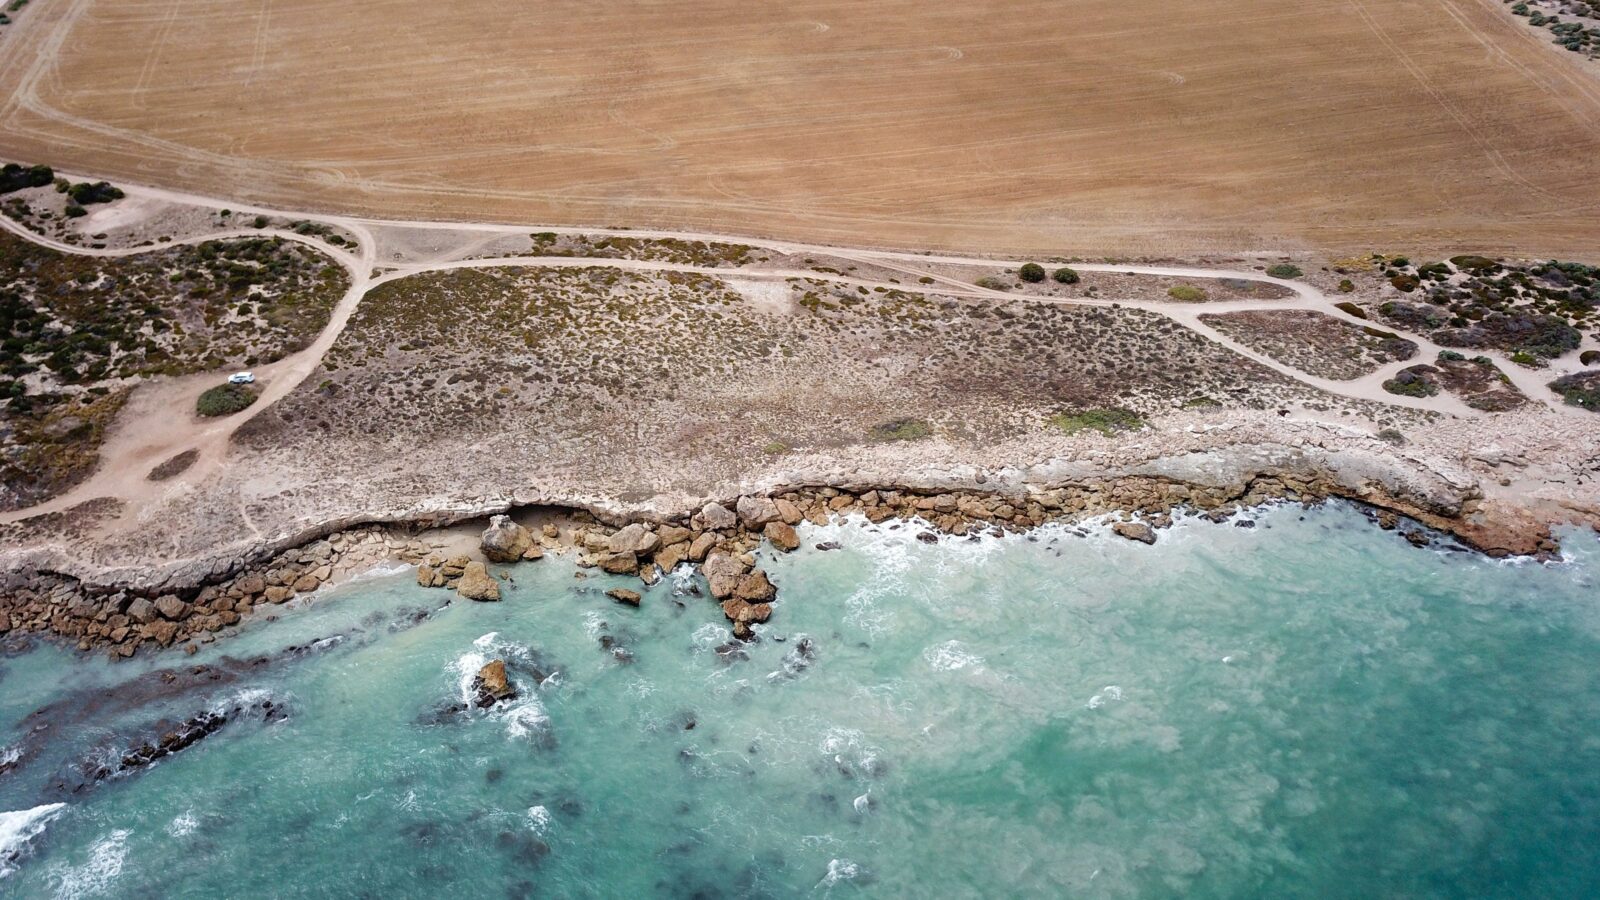 Drone view of shoreline, campground, sand tracks, aqua ocean